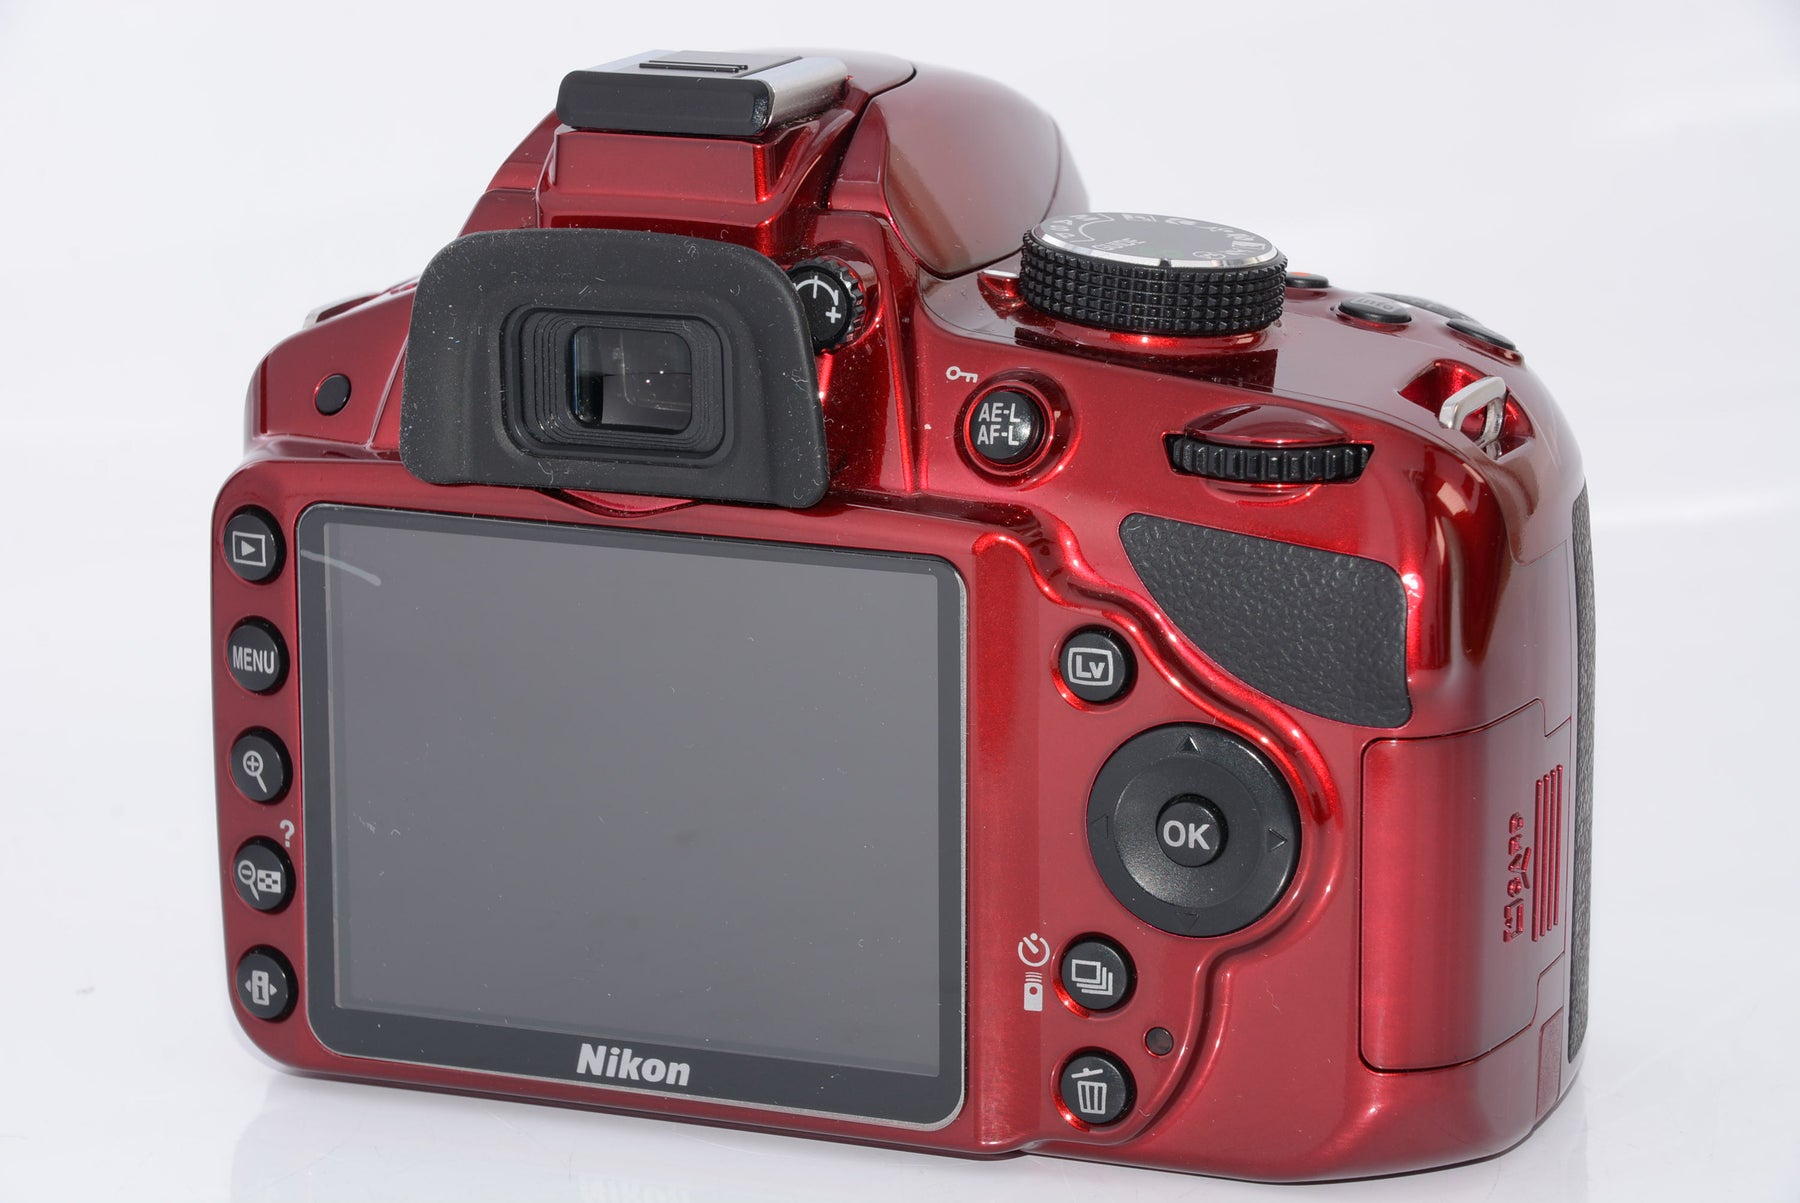 カメラNikon デジタル一眼レフカメラ D3200 レンズキット